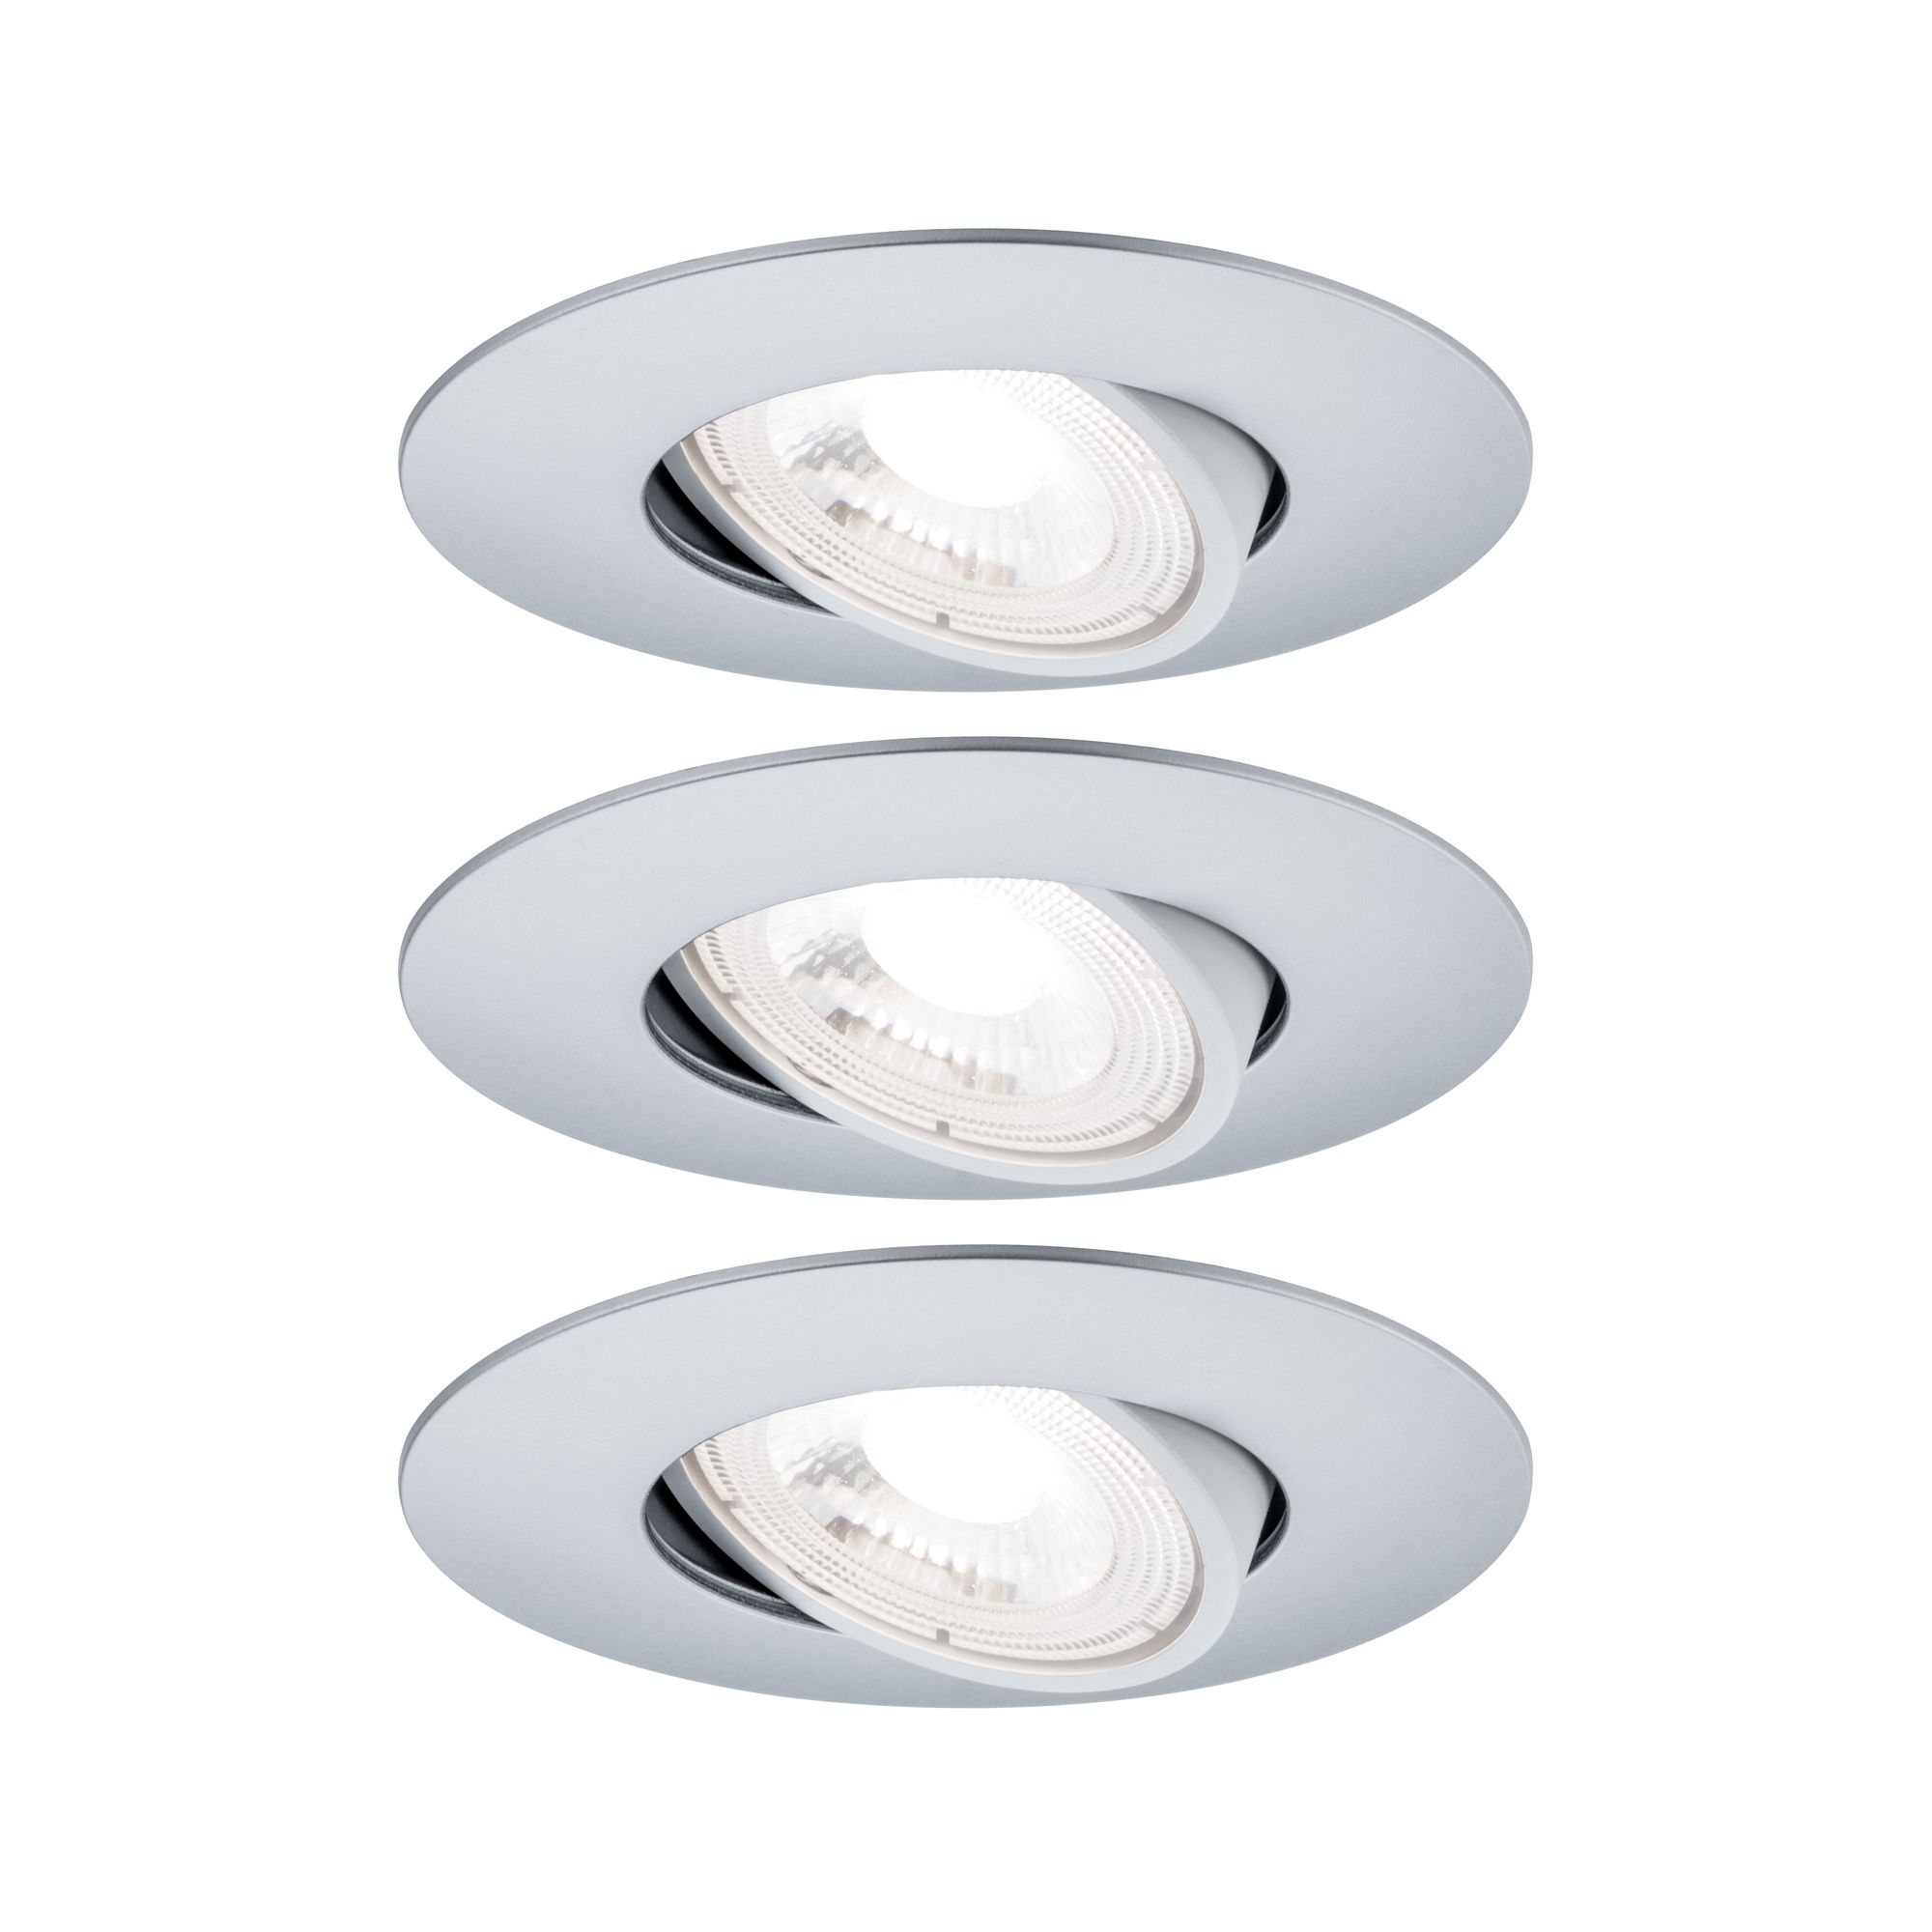 LED-Einbauleuchte weiß 460 lm schwenkbar, 3er-Set + product picture